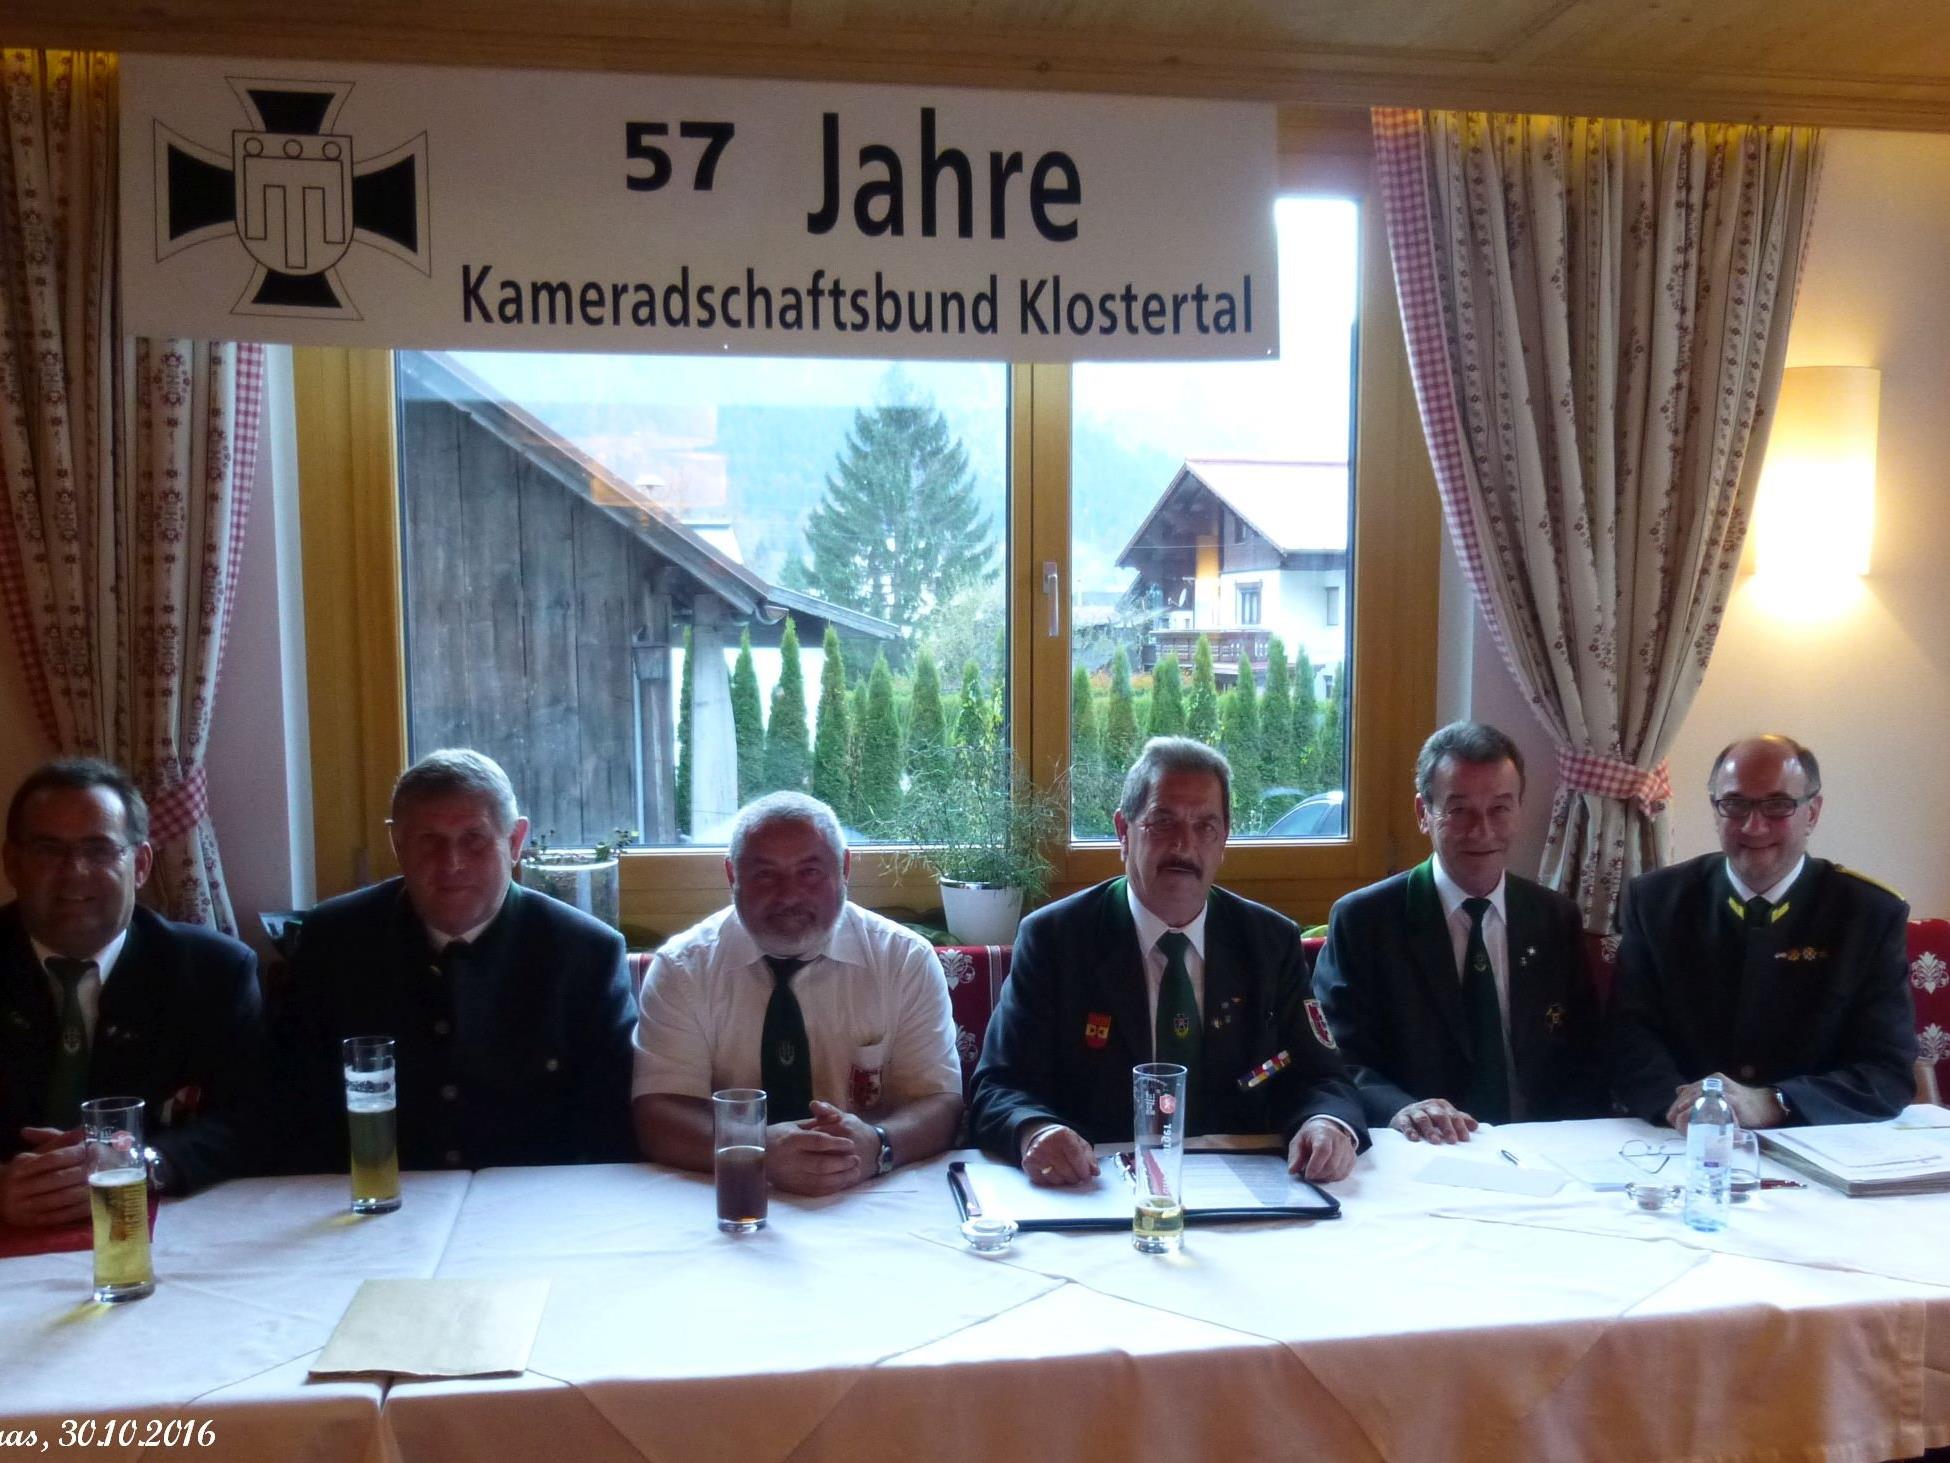 Präsidium des Kameradschaftsbundes Klostertal mit Präsident Alwin Denz